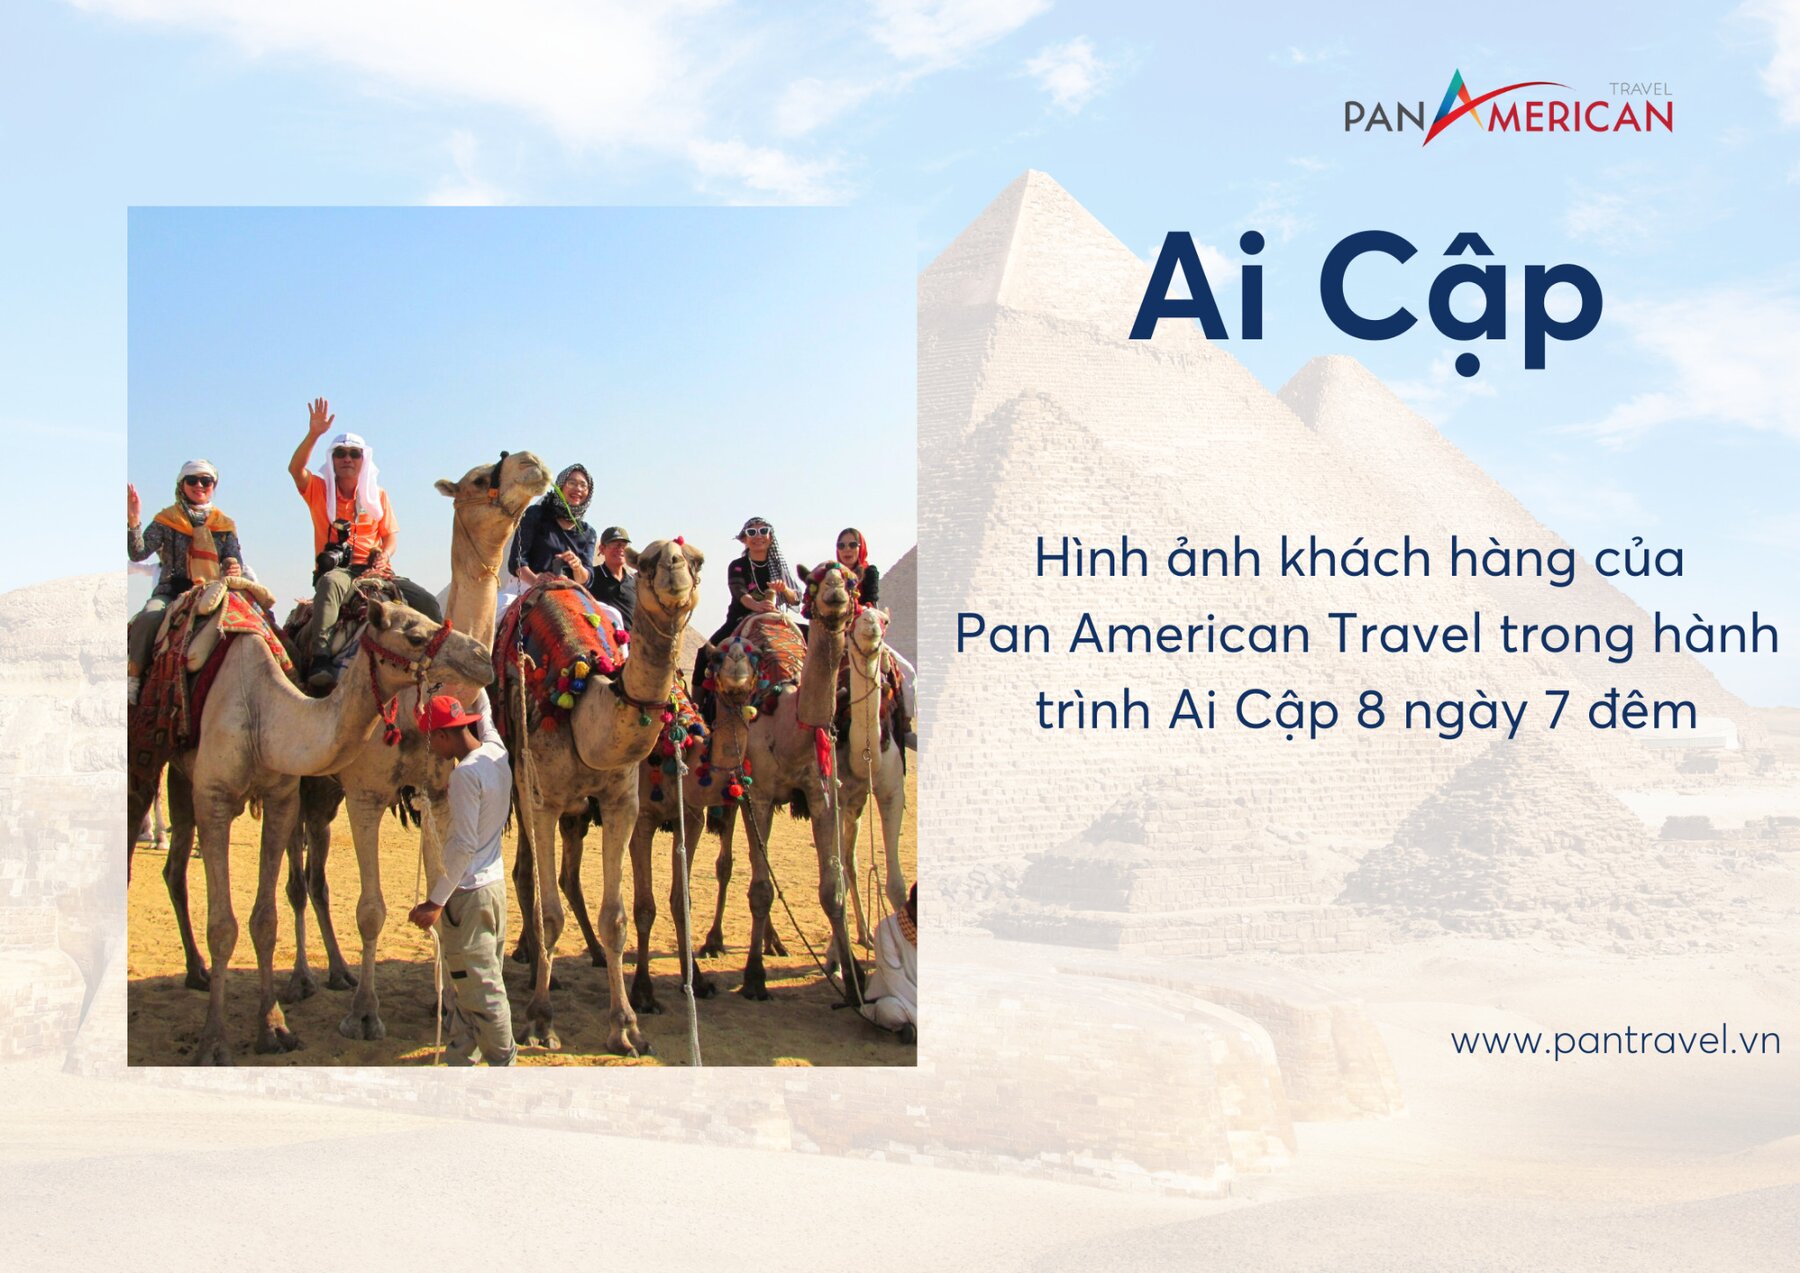 Hình ảnh khách hàng của Pan American Travel trong tour du lịch châu Phi - Hành trình khám phá Ai Cập cổ đại 8 ngày 7 đêm.